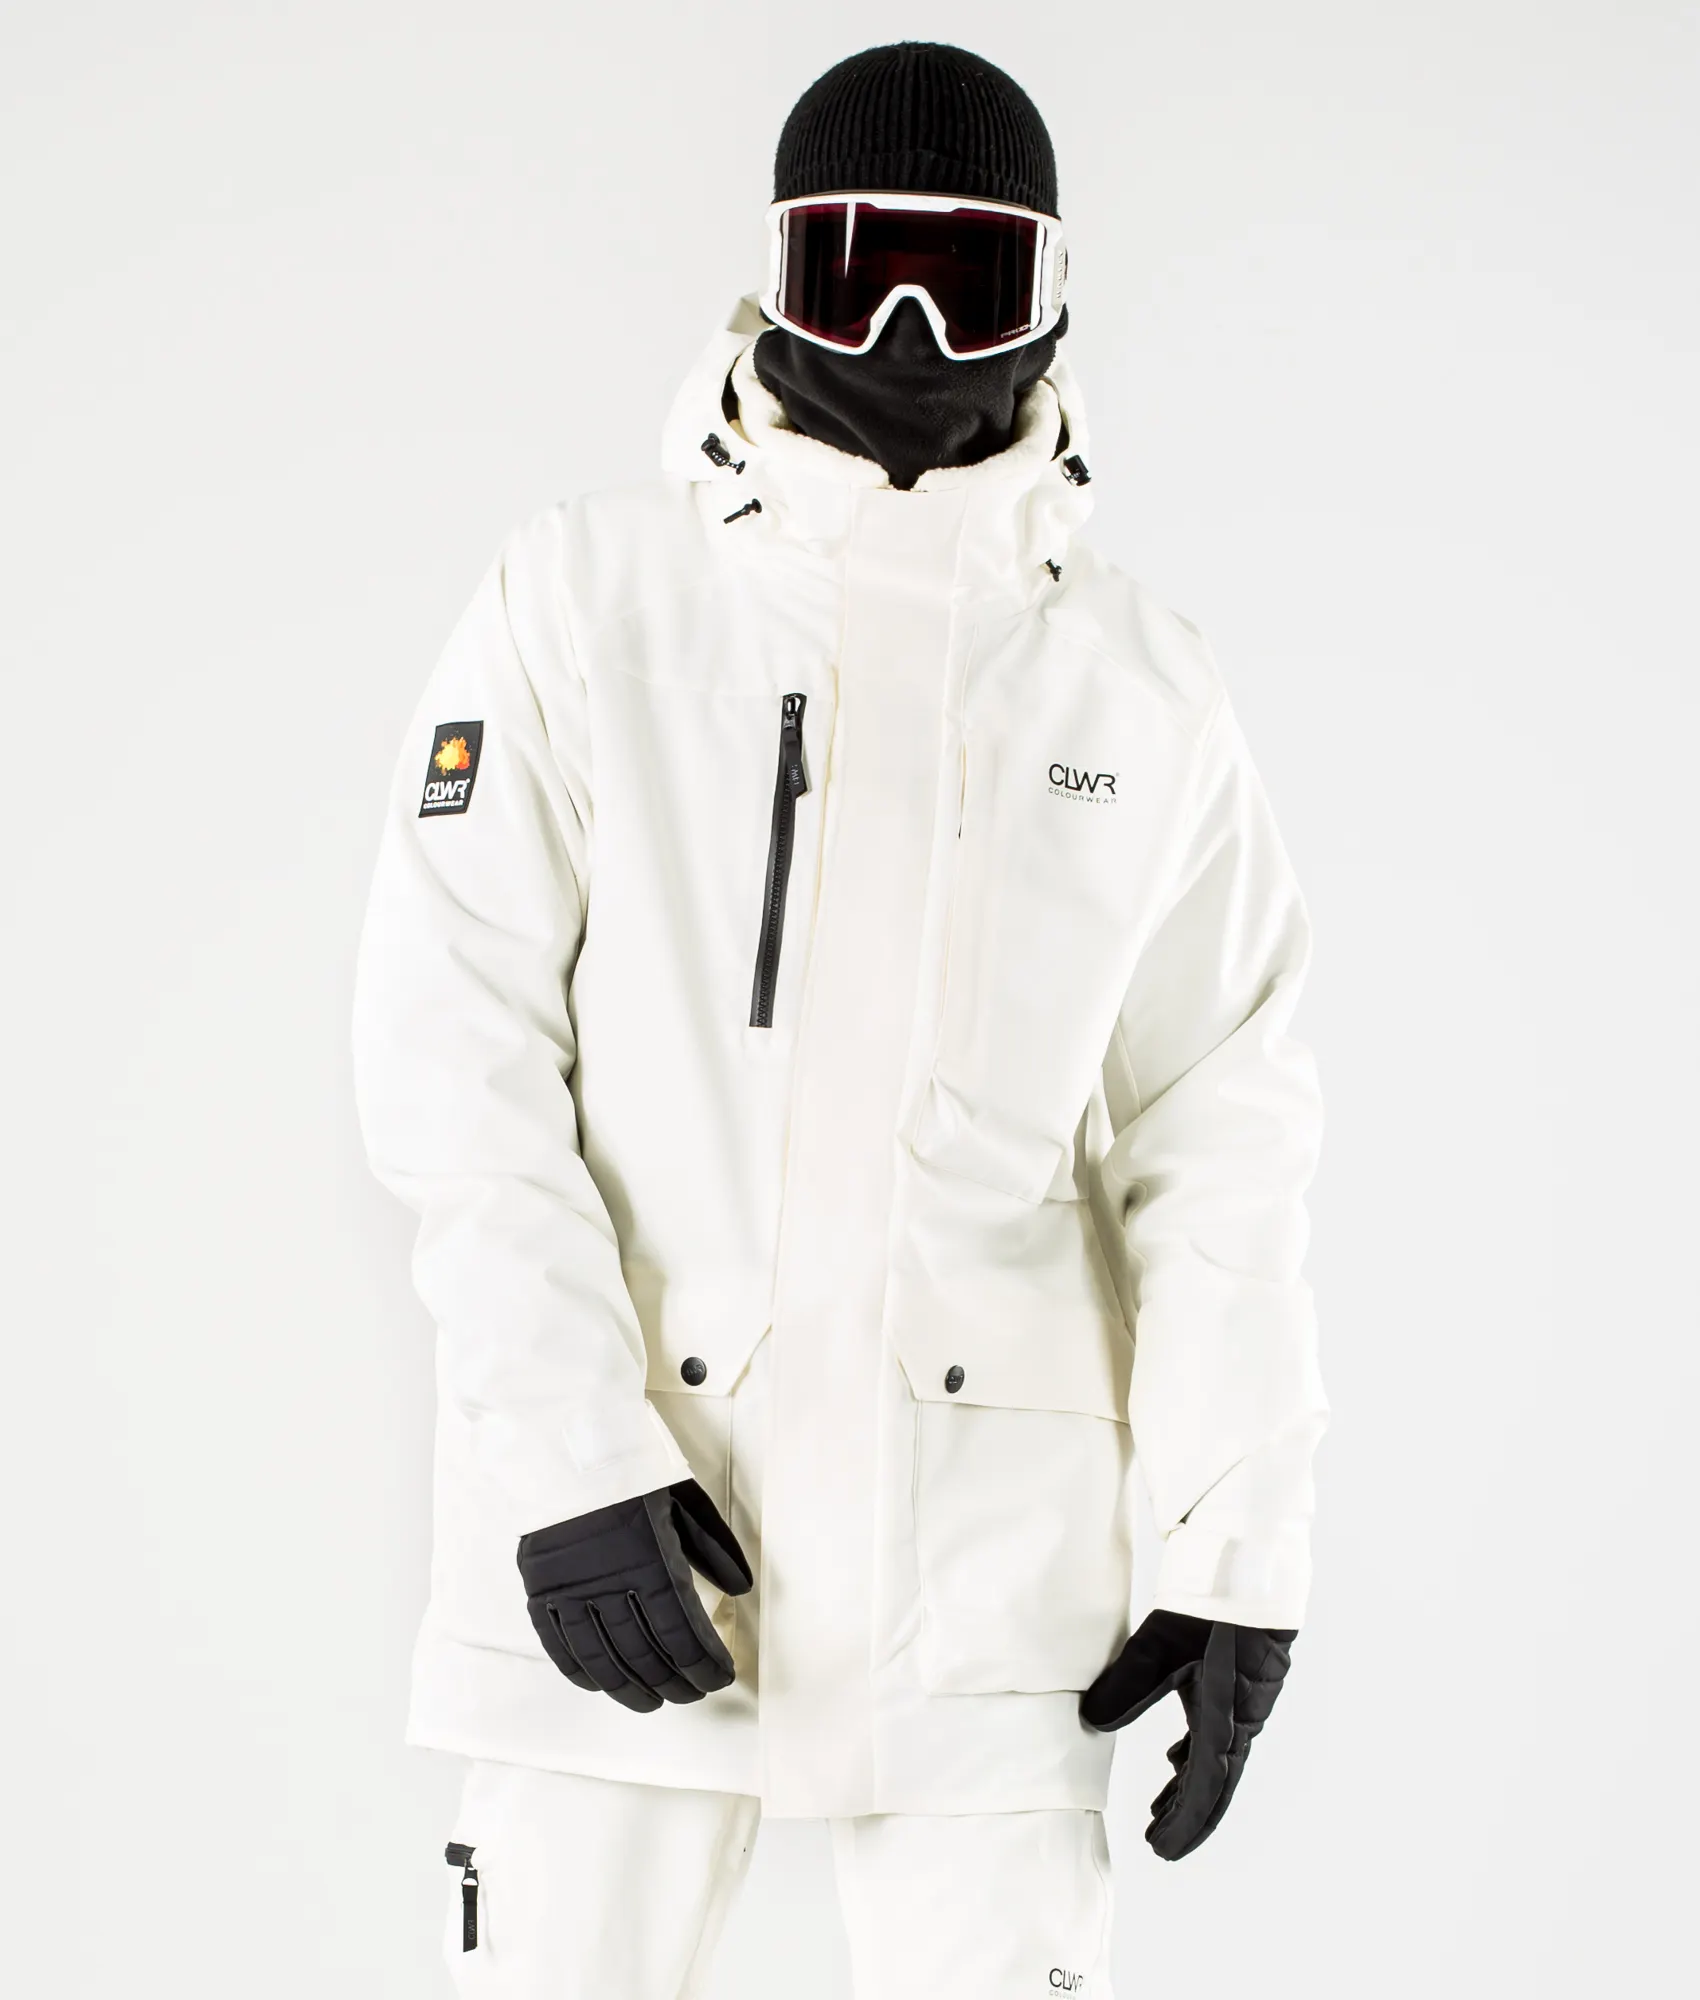 Beste erschwing liche Ski-und Snowboard ausrüstung Herren wasserdichte Ski & Schnee tragen Overall Snowboard jacke Unisex